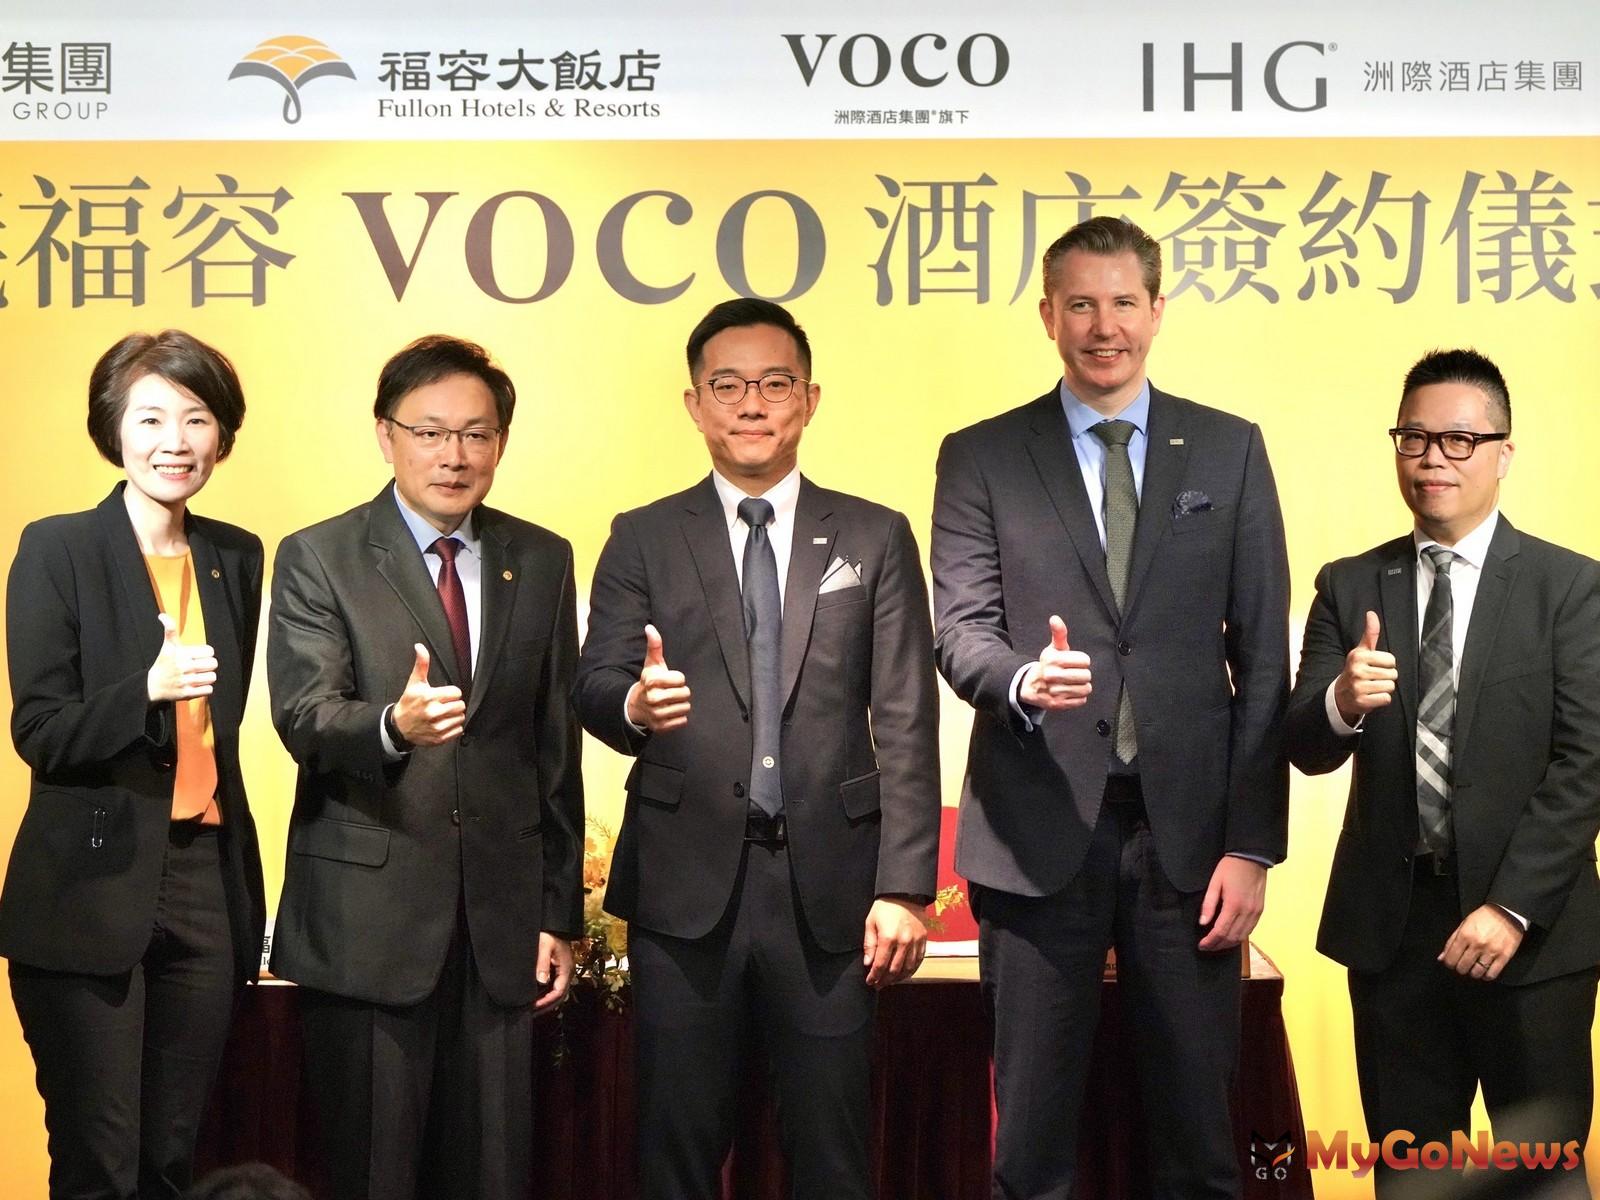 福容嘉義加入IHG成為全台首間掛牌voco酒店